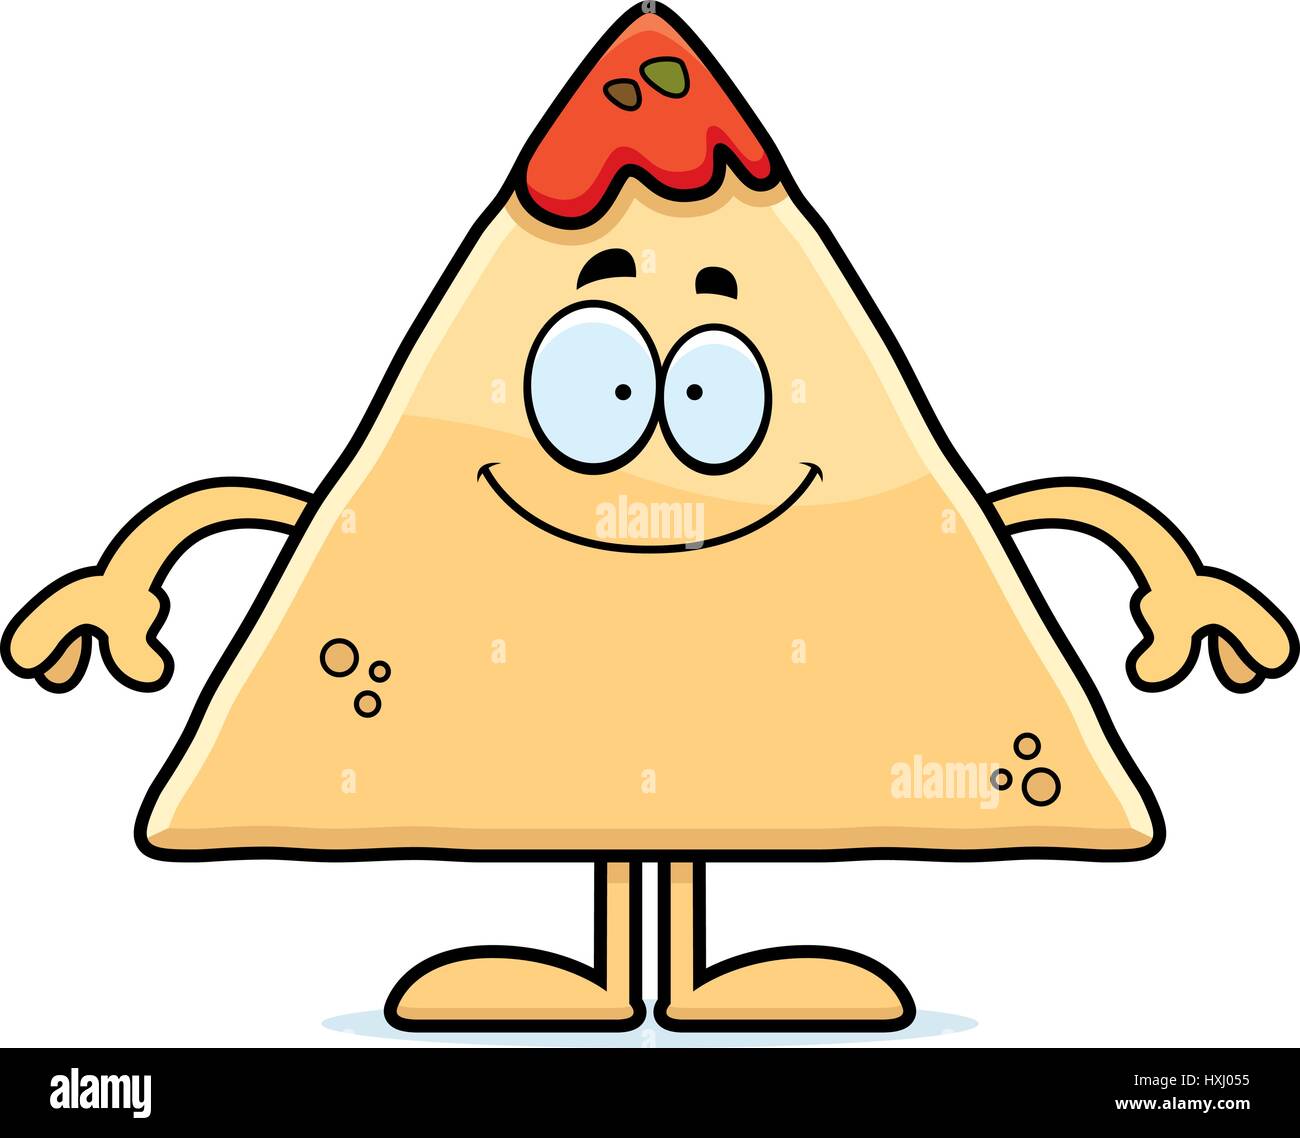 Eine Karikatur Illustration eines Tortilla Chips mit Salsa suchen glücklich. Stock Vektor